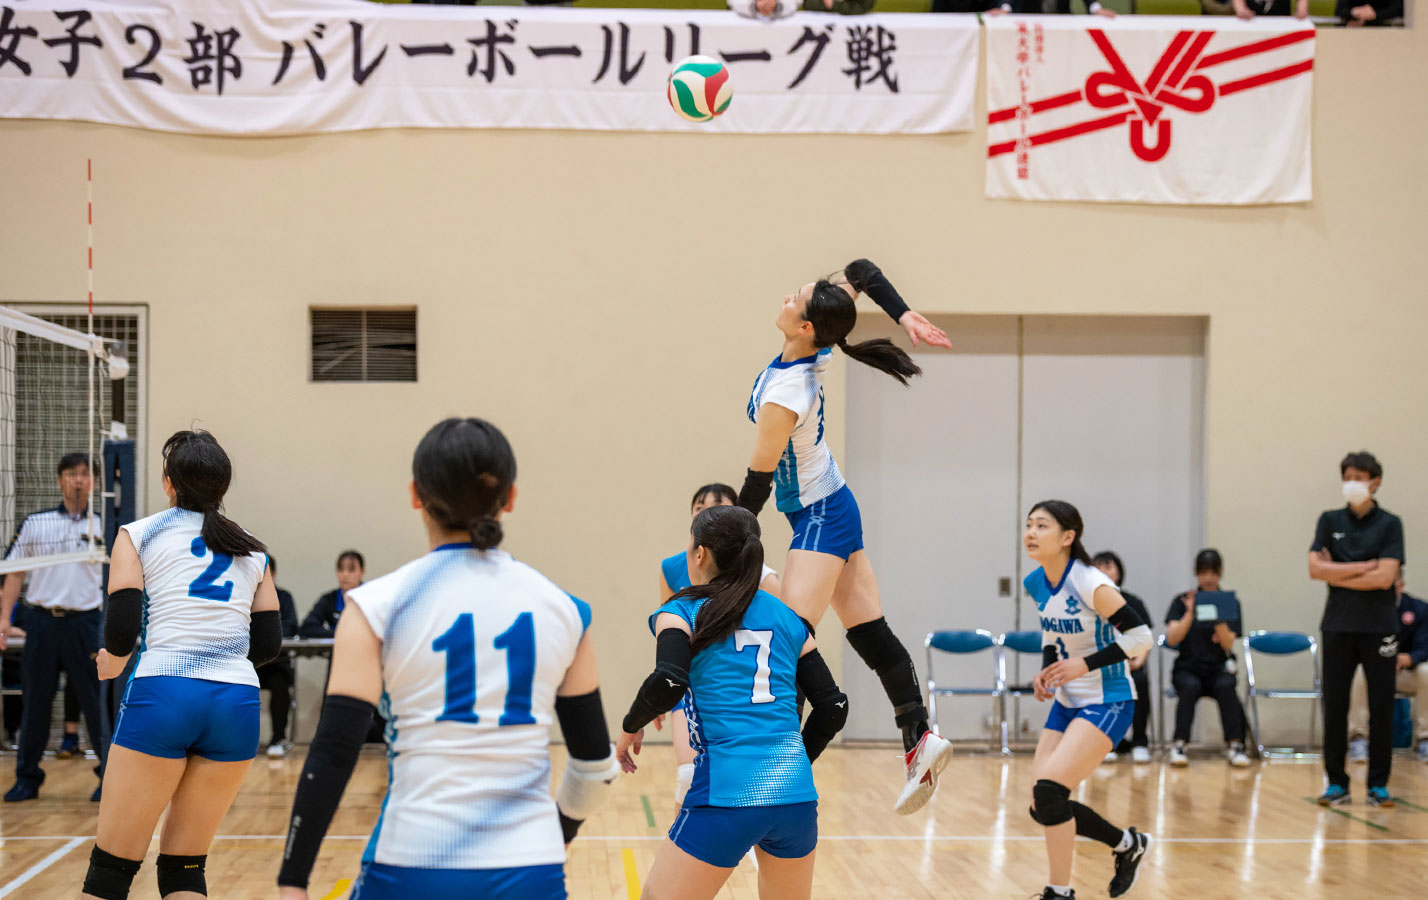 女子バレーボール部 春季関東大学女子2部バレーボールリーグ第8戦・第9戦結果